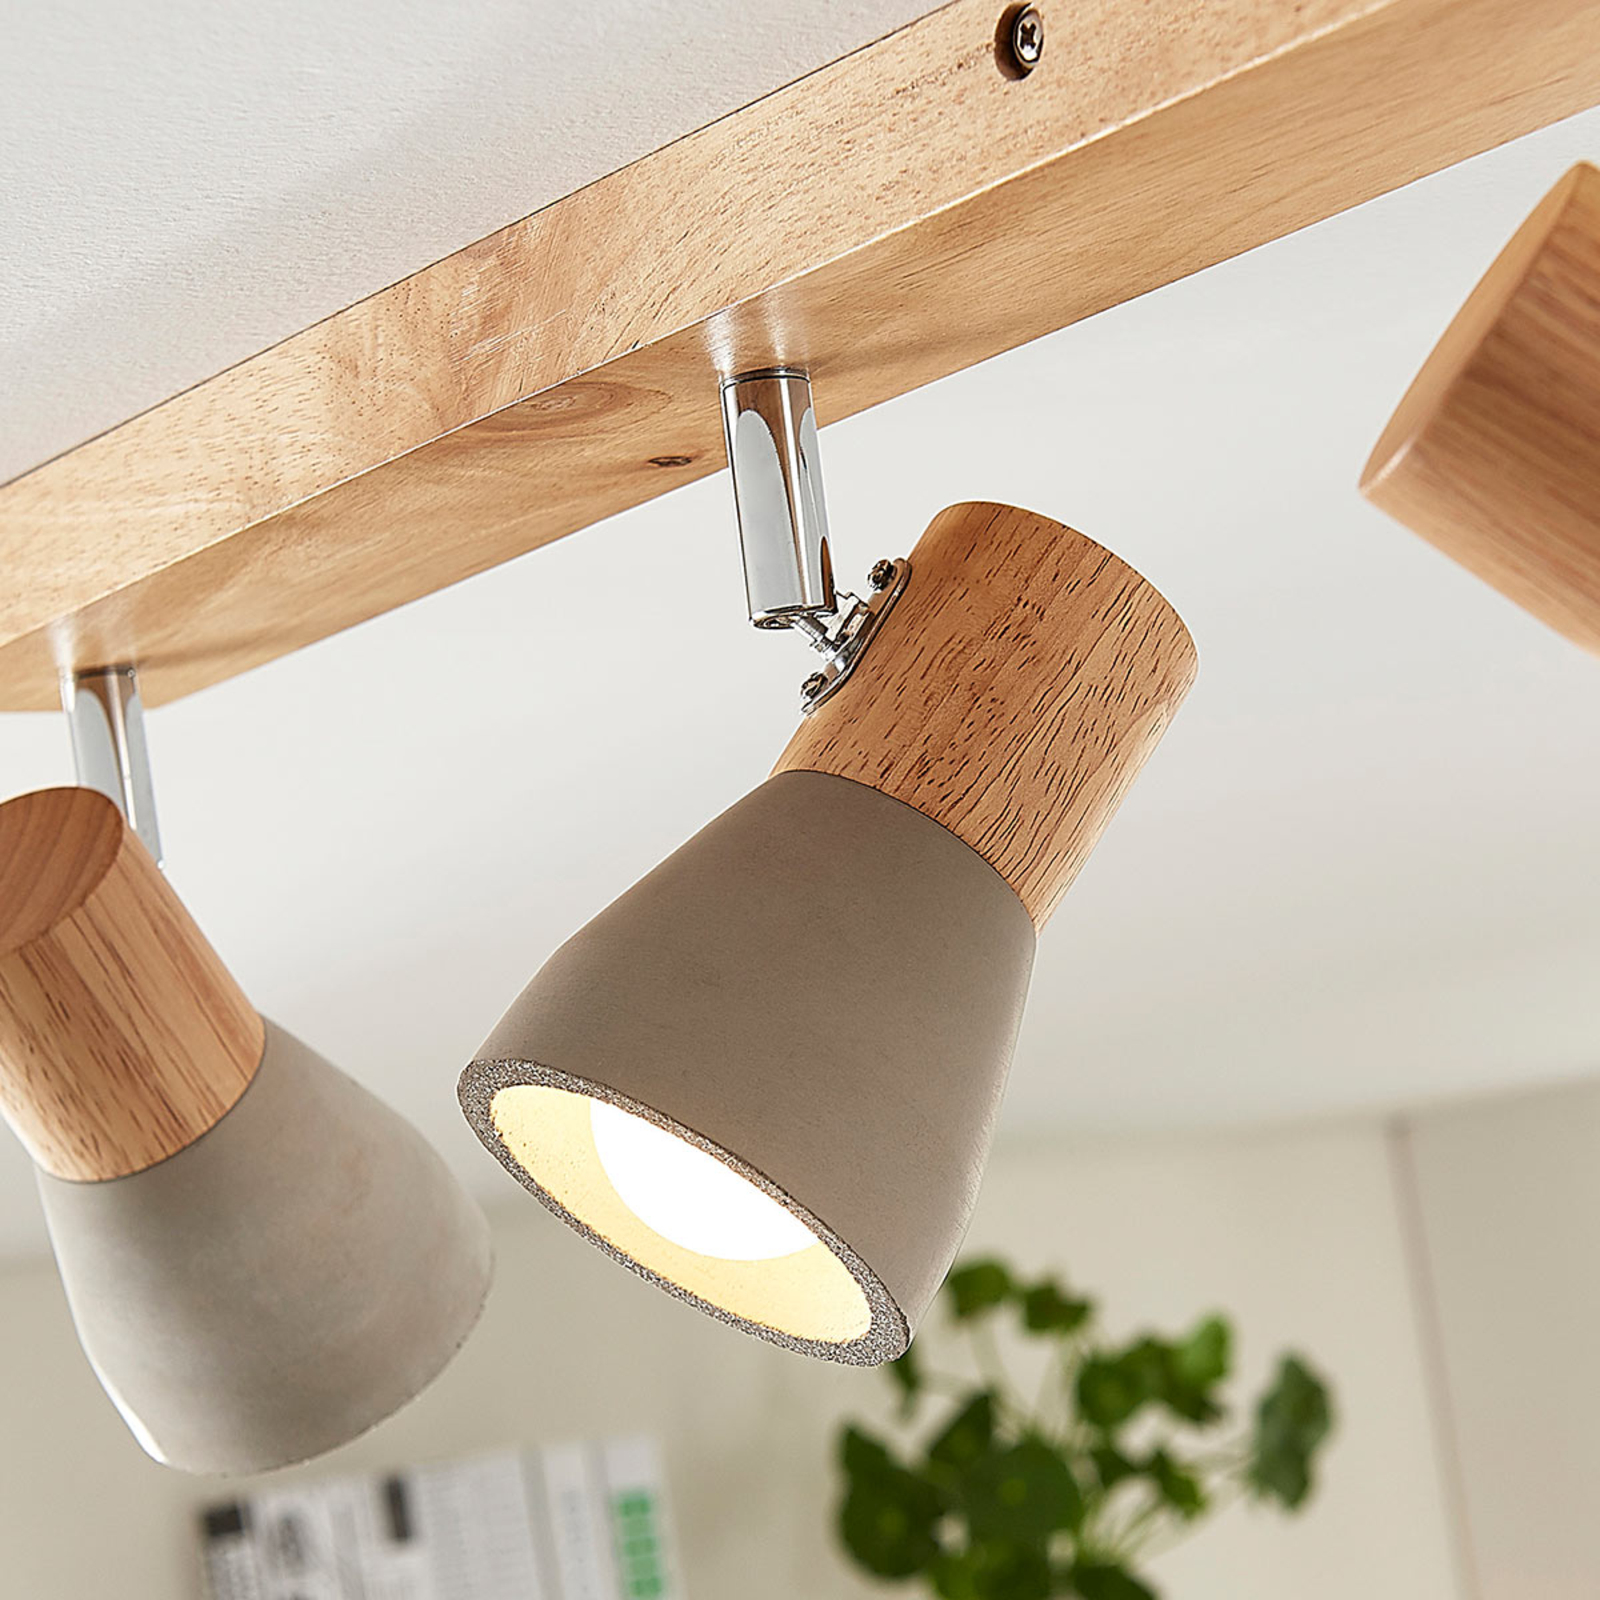 Filiz spotlight made of wood and concrete, 4-bulb